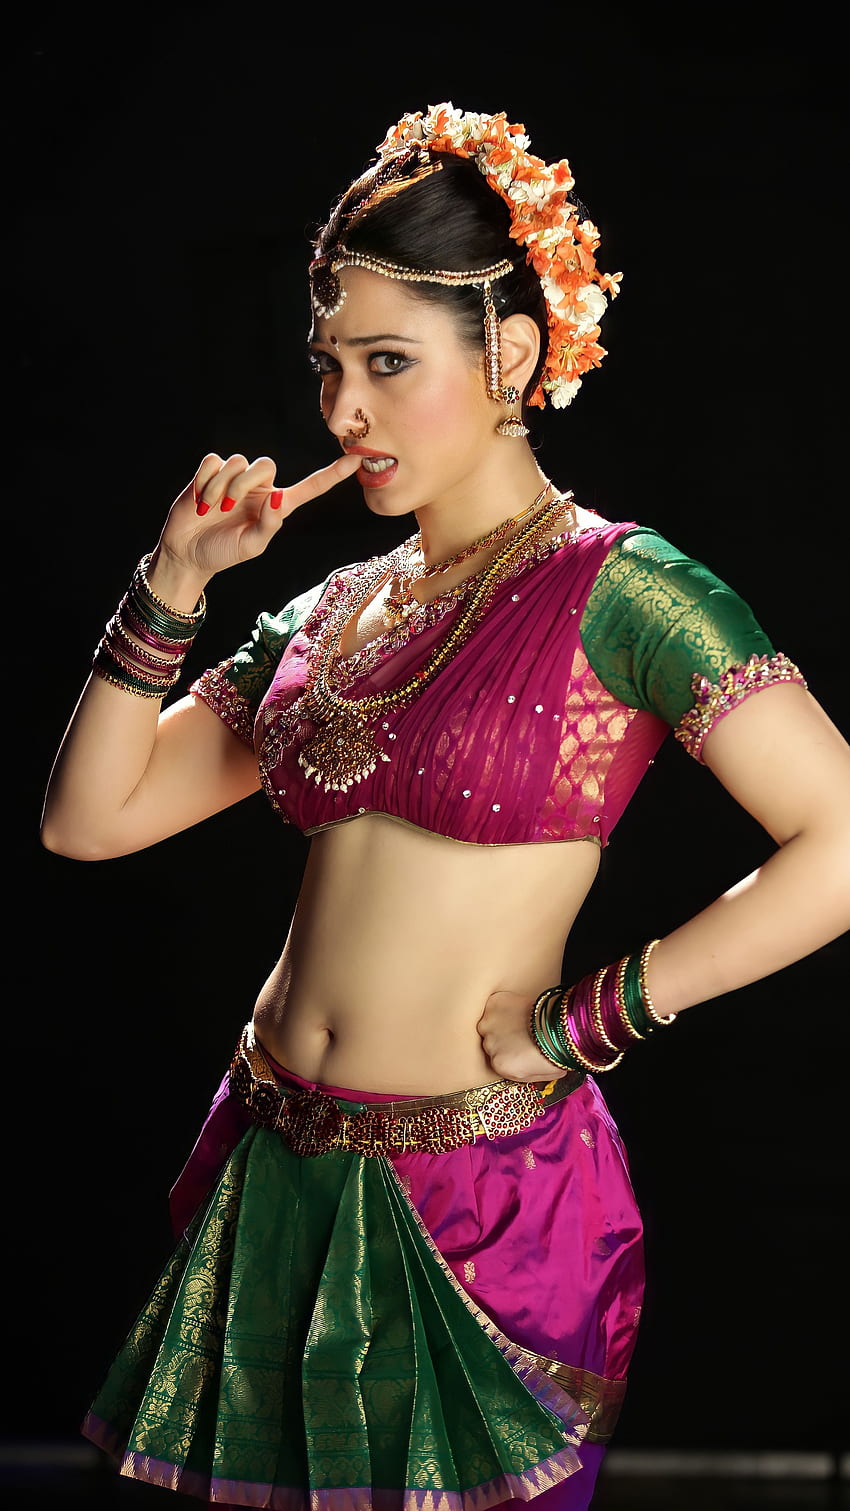 Tamanna Bhatia, telugu actress HD phone wallpaper